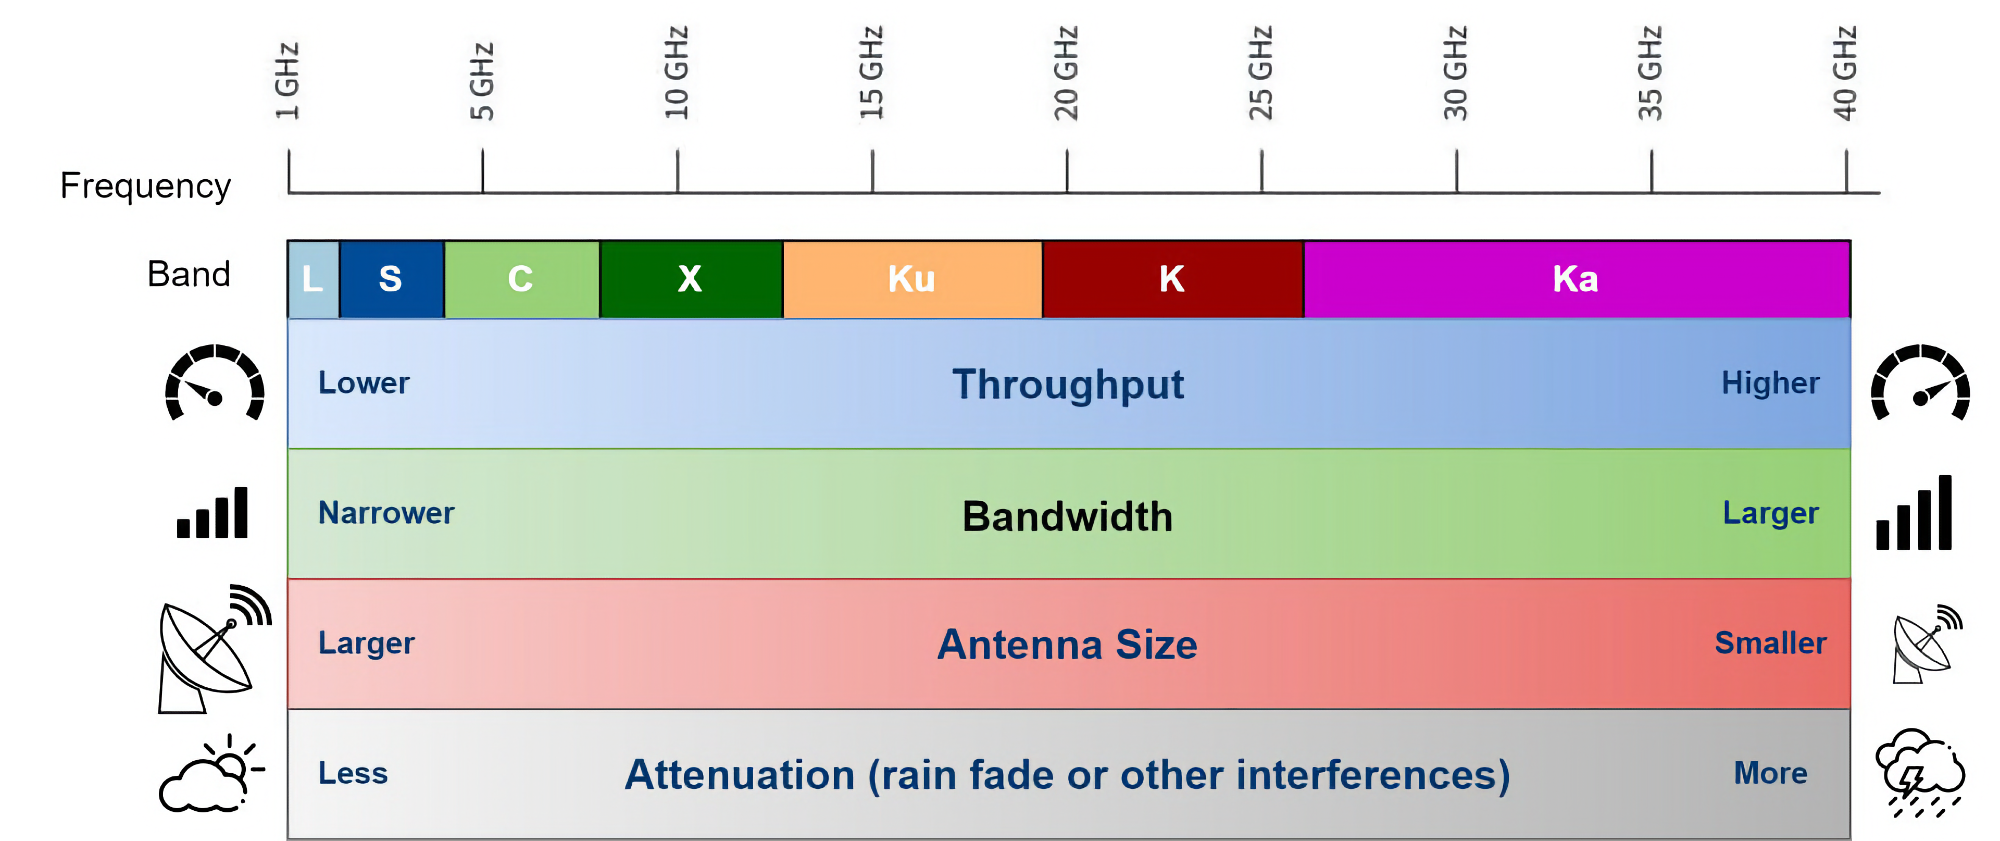 Quali frequenze radio vengono utilizzate per le comunicazioni spaziali?